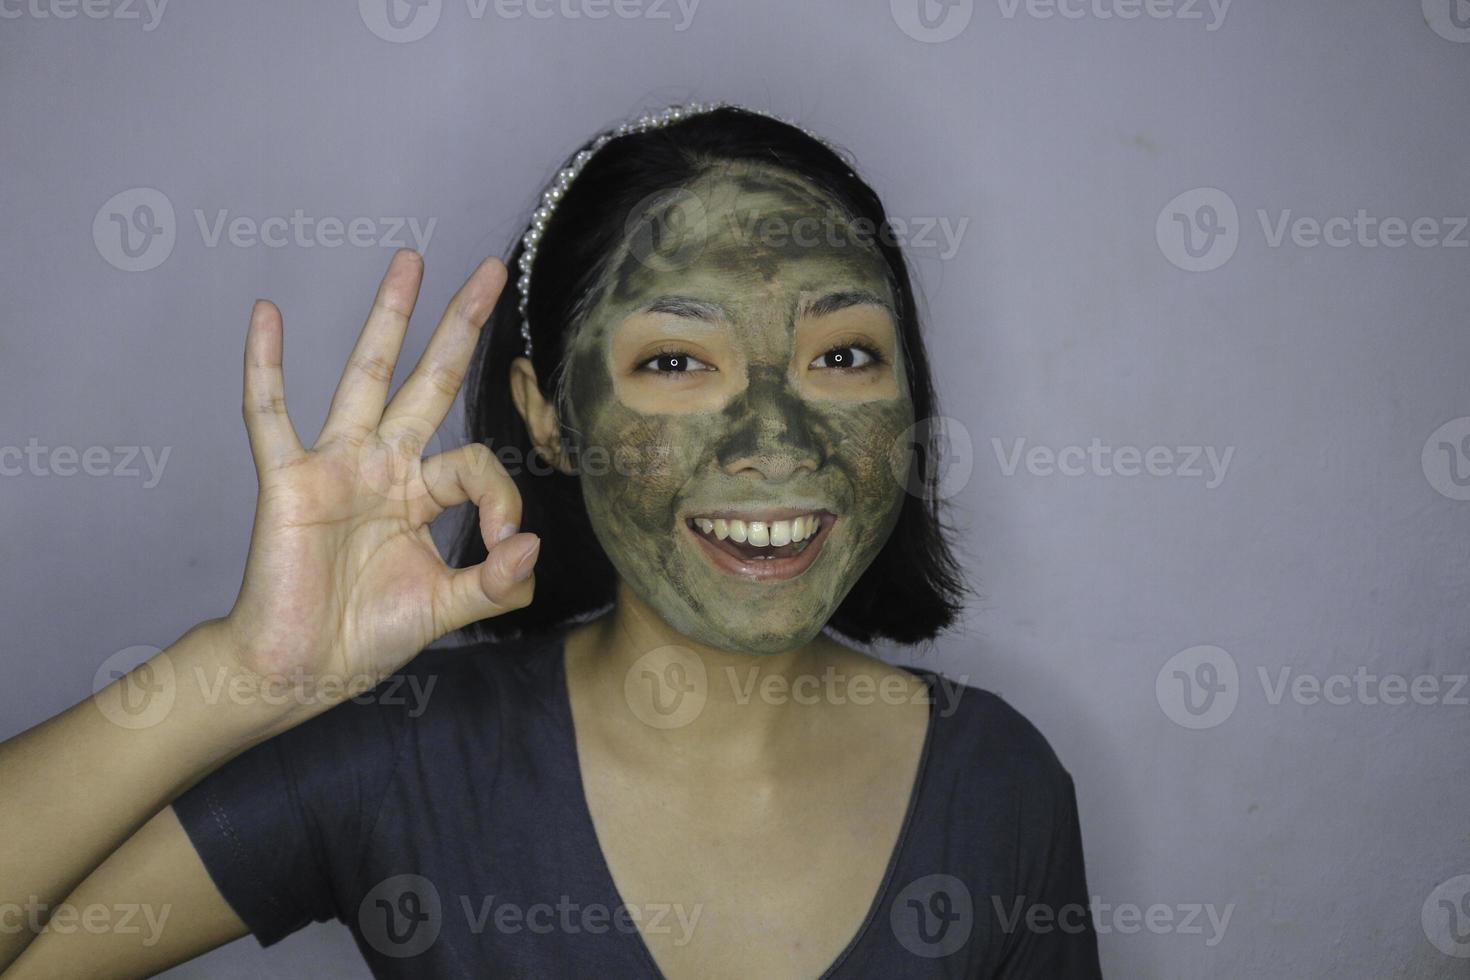 sonríe a las mujeres asiáticas sonriendo cuando usa una máscara facial de belleza foto